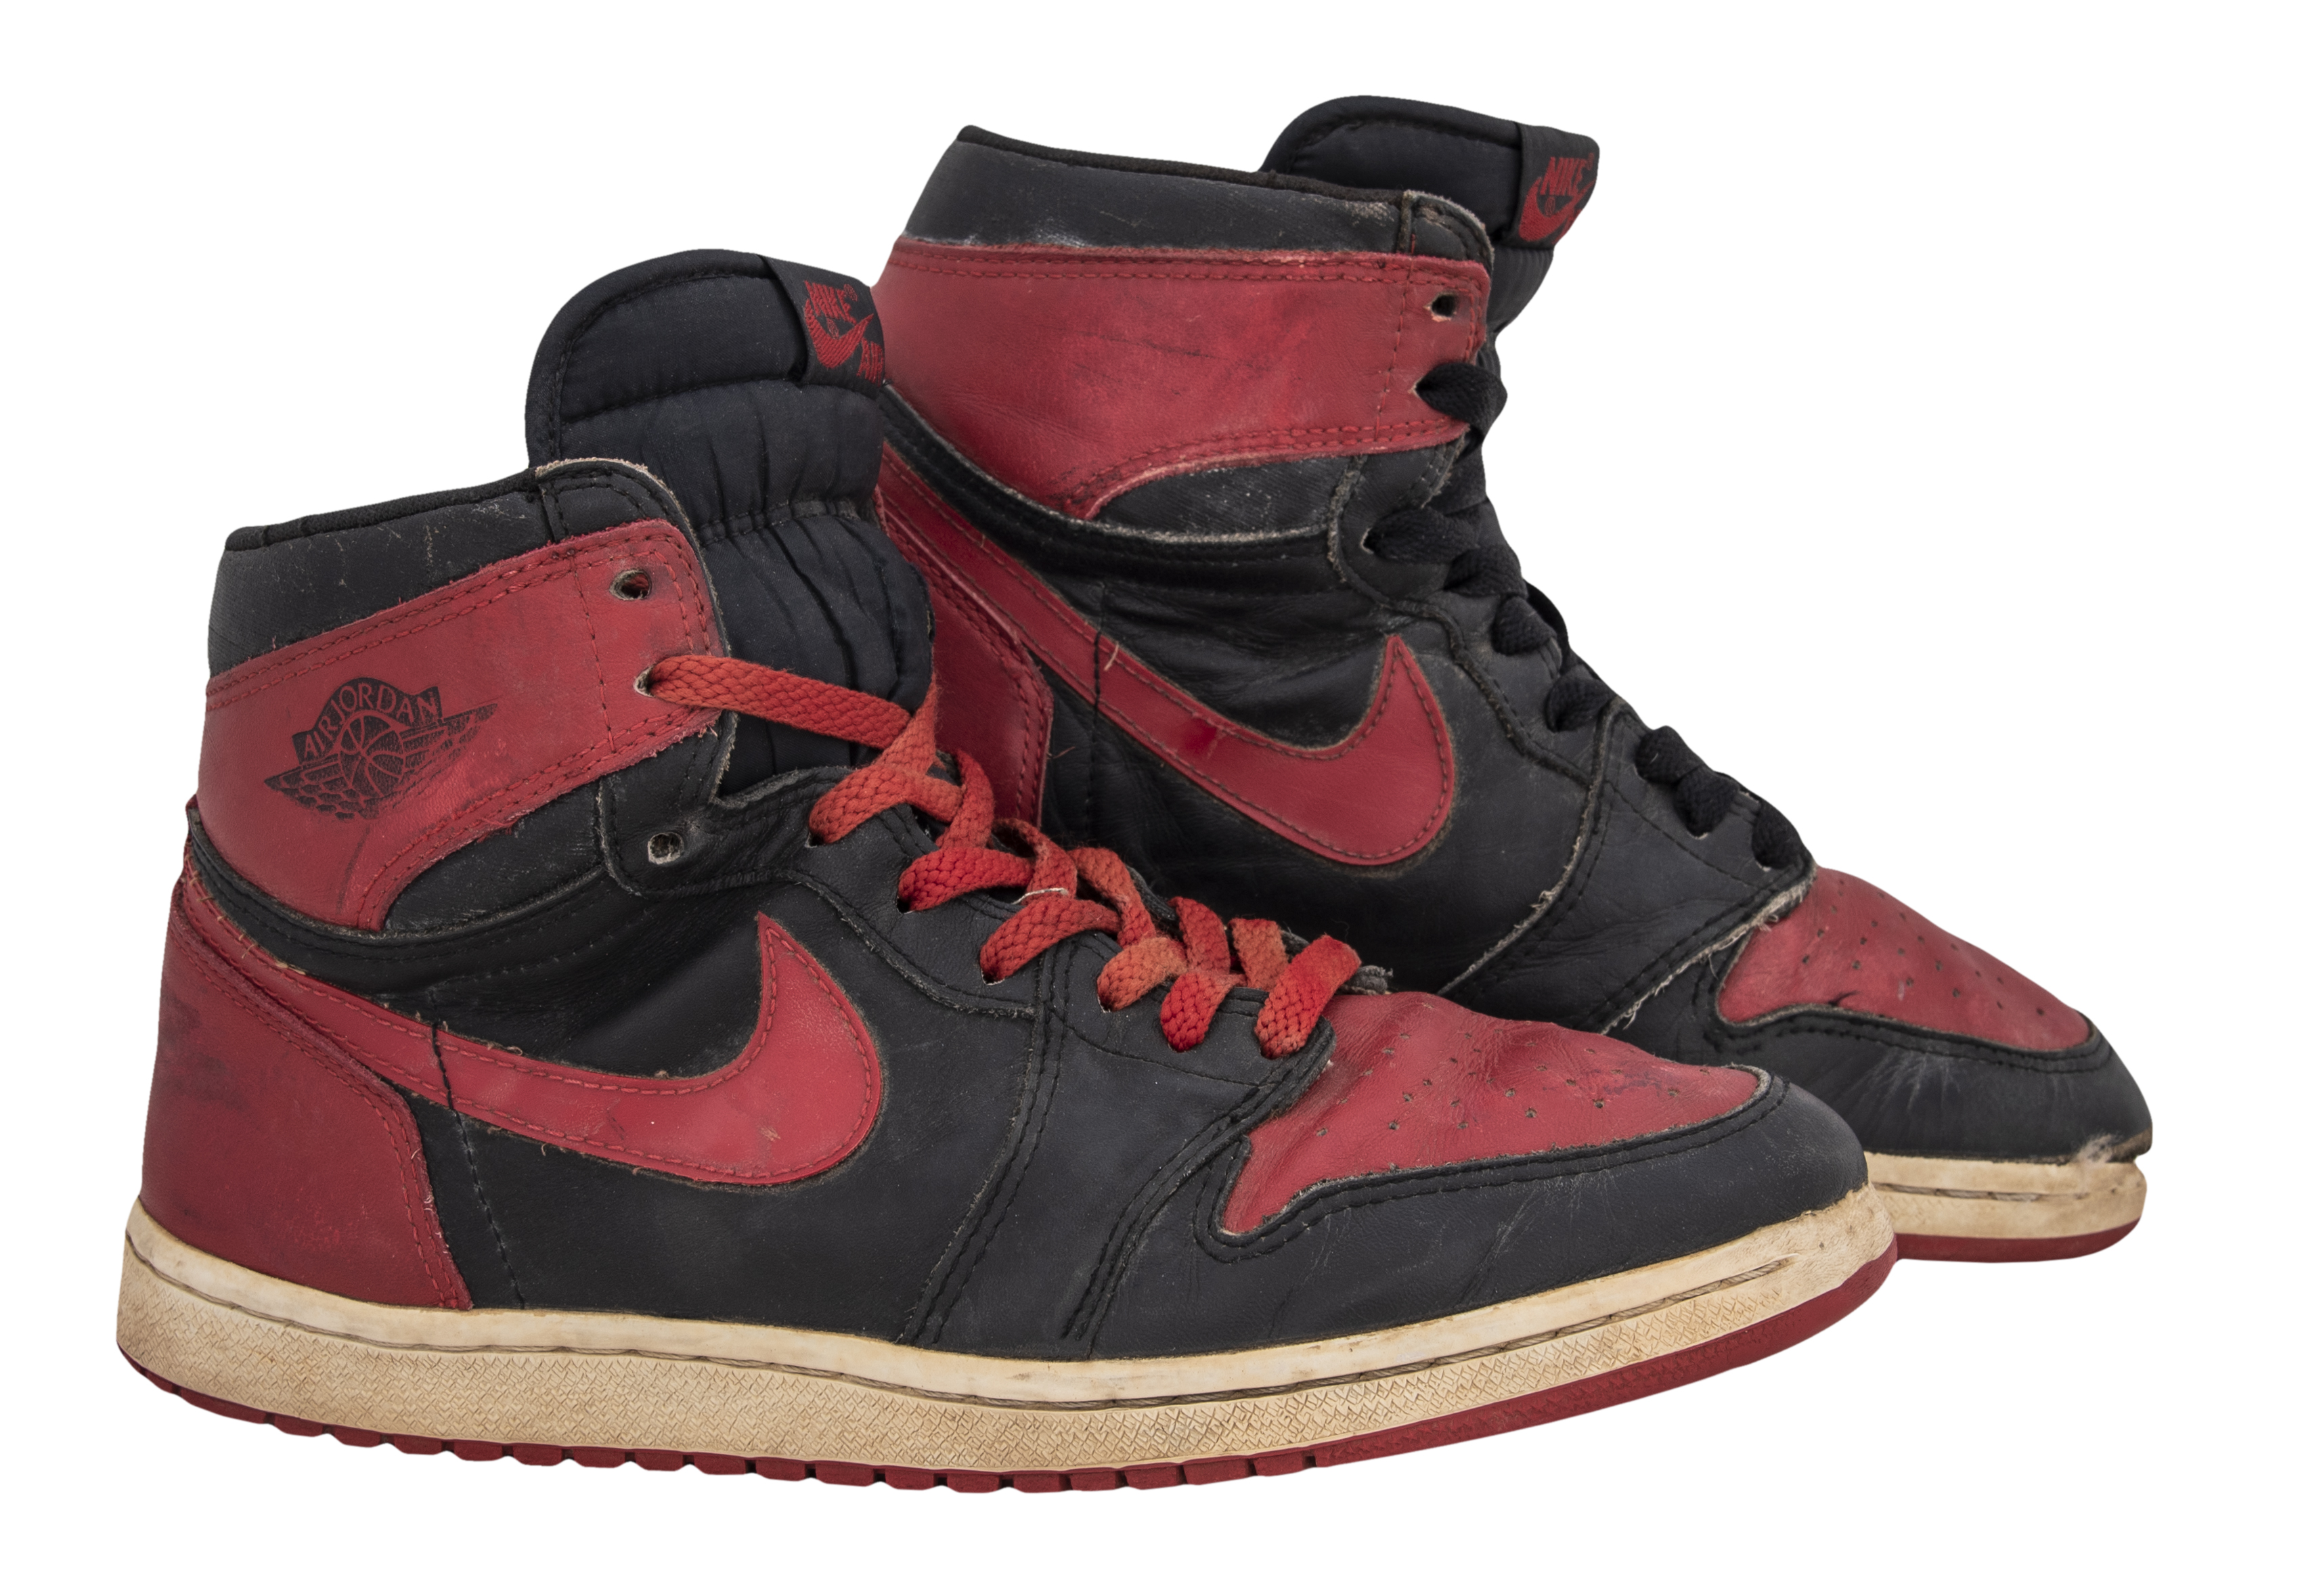 Lot Detail - 1985 Original Pair of Air Jordan I (Red & Black) Sneakers - Design Banned By NBA